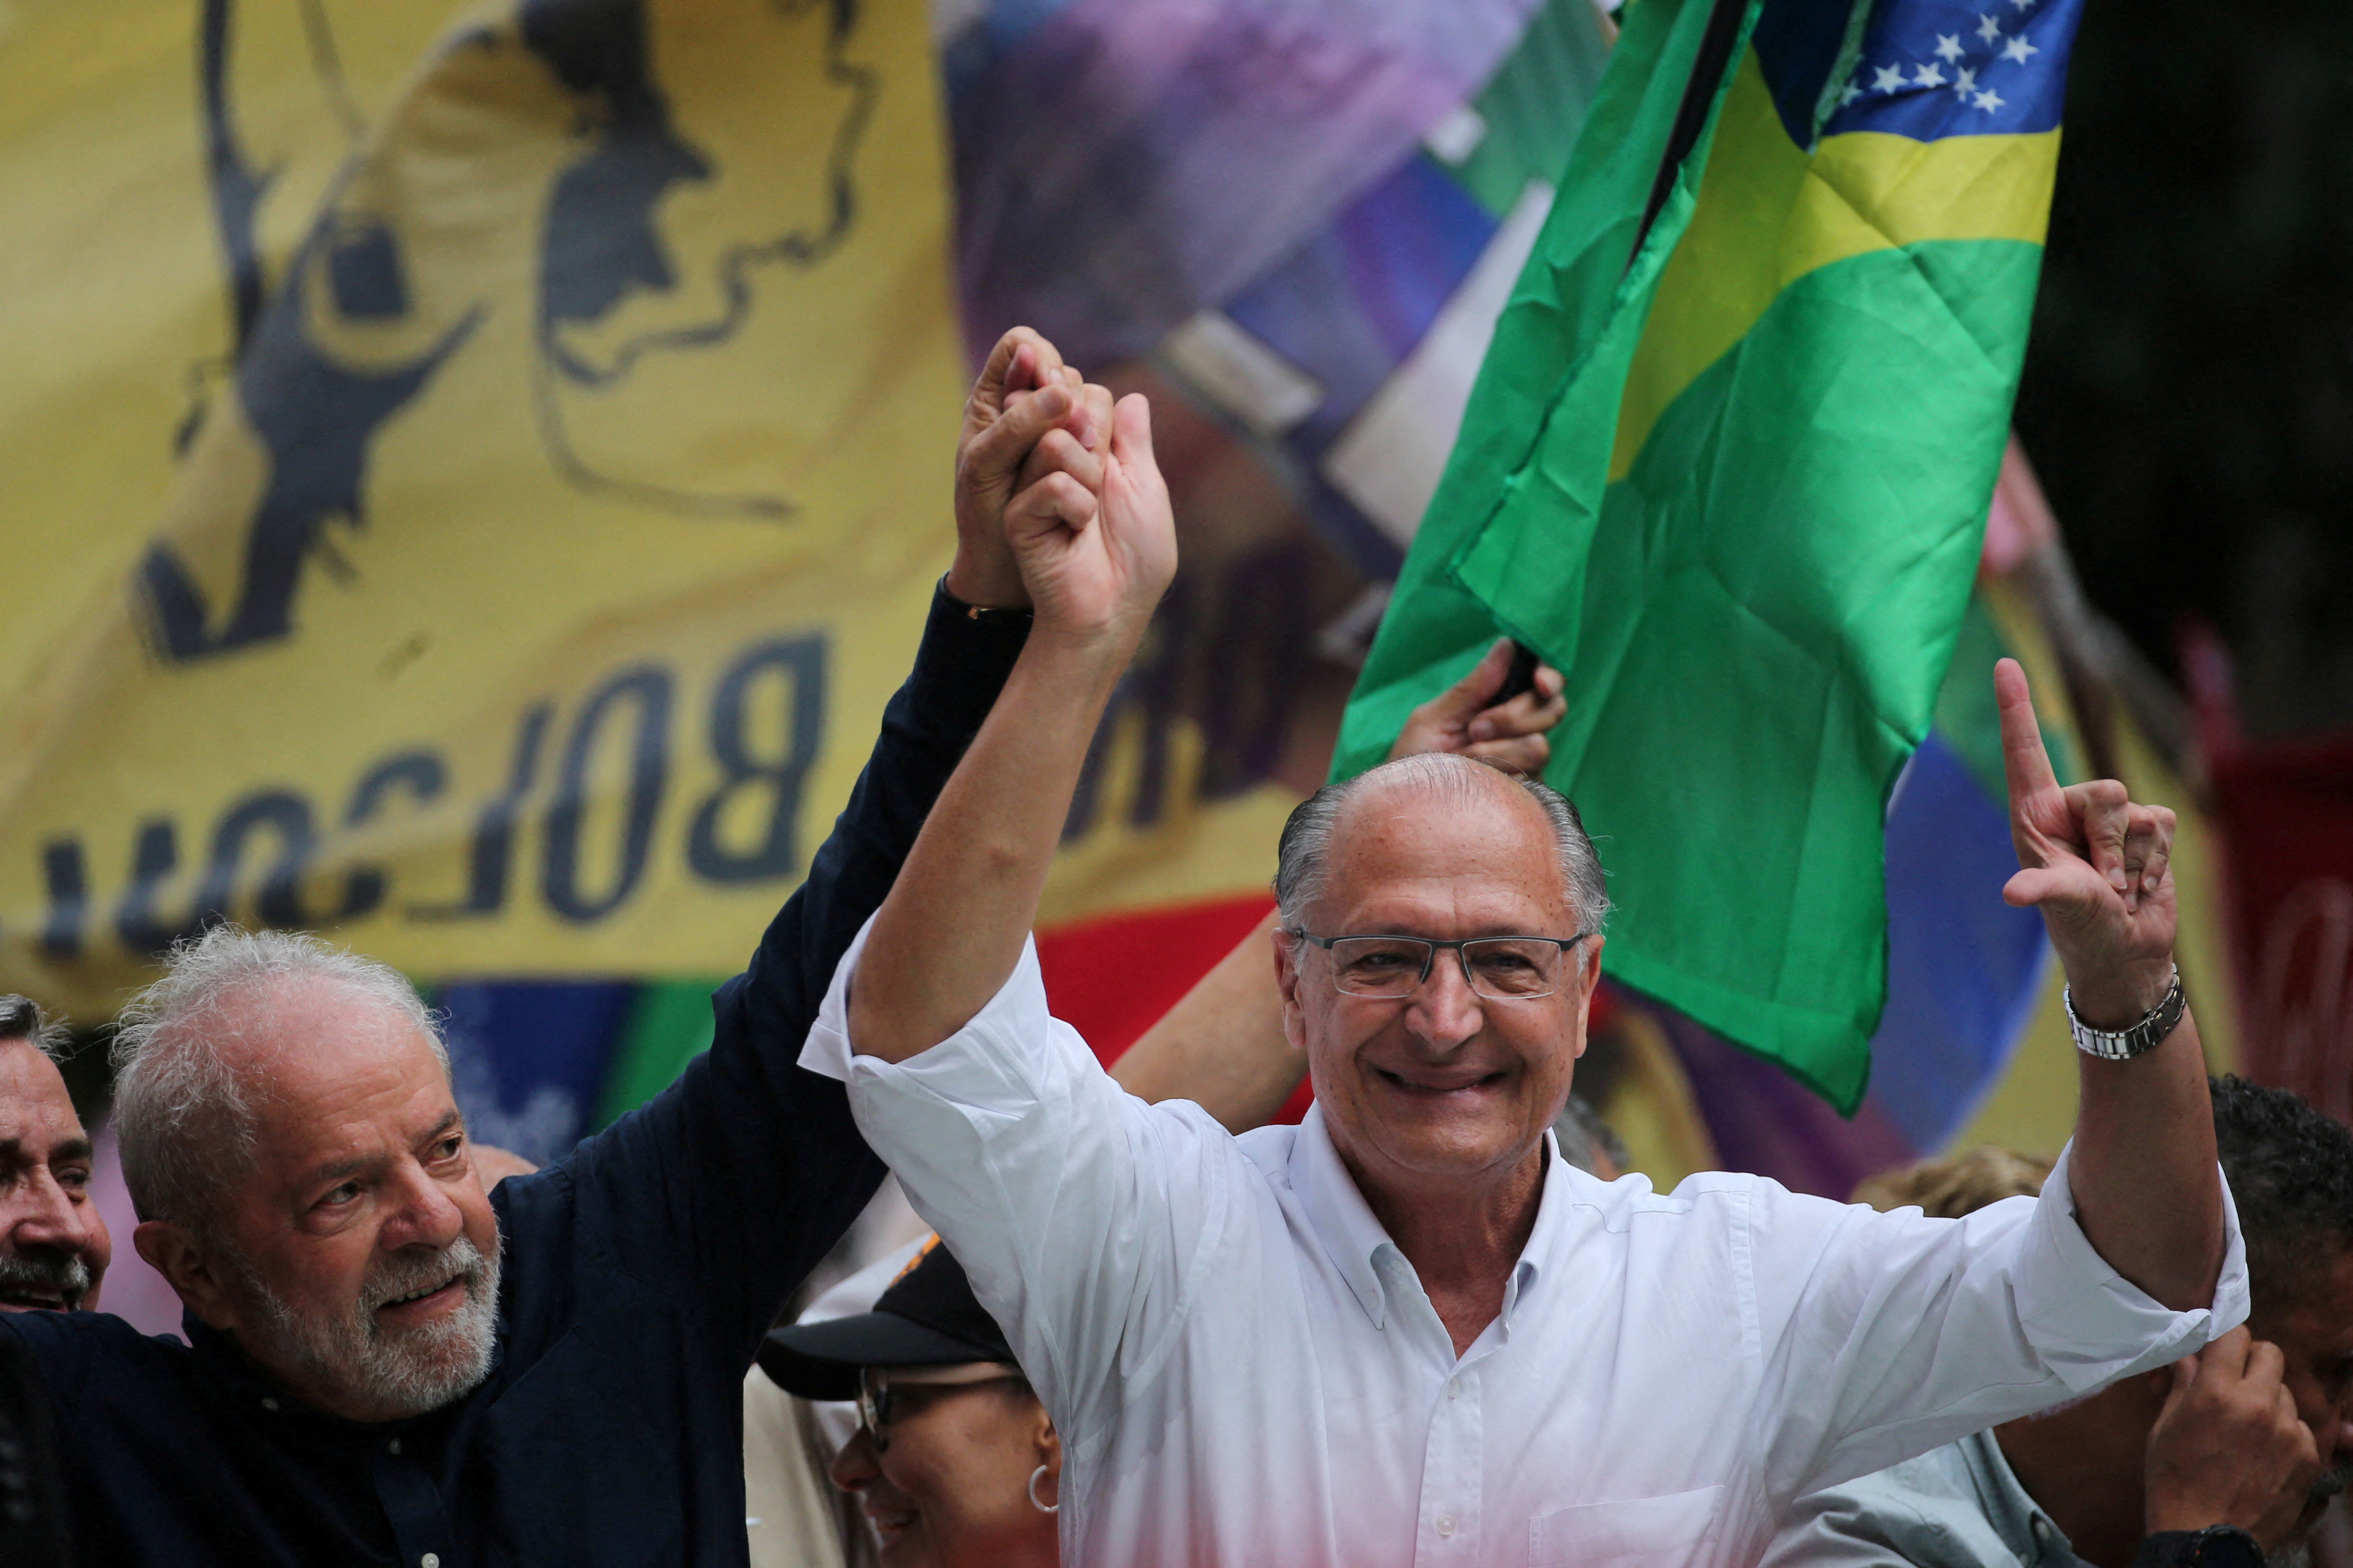 El vicepresidente electo, Geraldo Alckmin, junto a Lula en uno de los actos de campaña de Porto Alegre. Será uno de los garantes de que Lula gobierne desde el centro con apoyo tanto de la izquierda como la derecha. (REUTERS/Diego Vara)